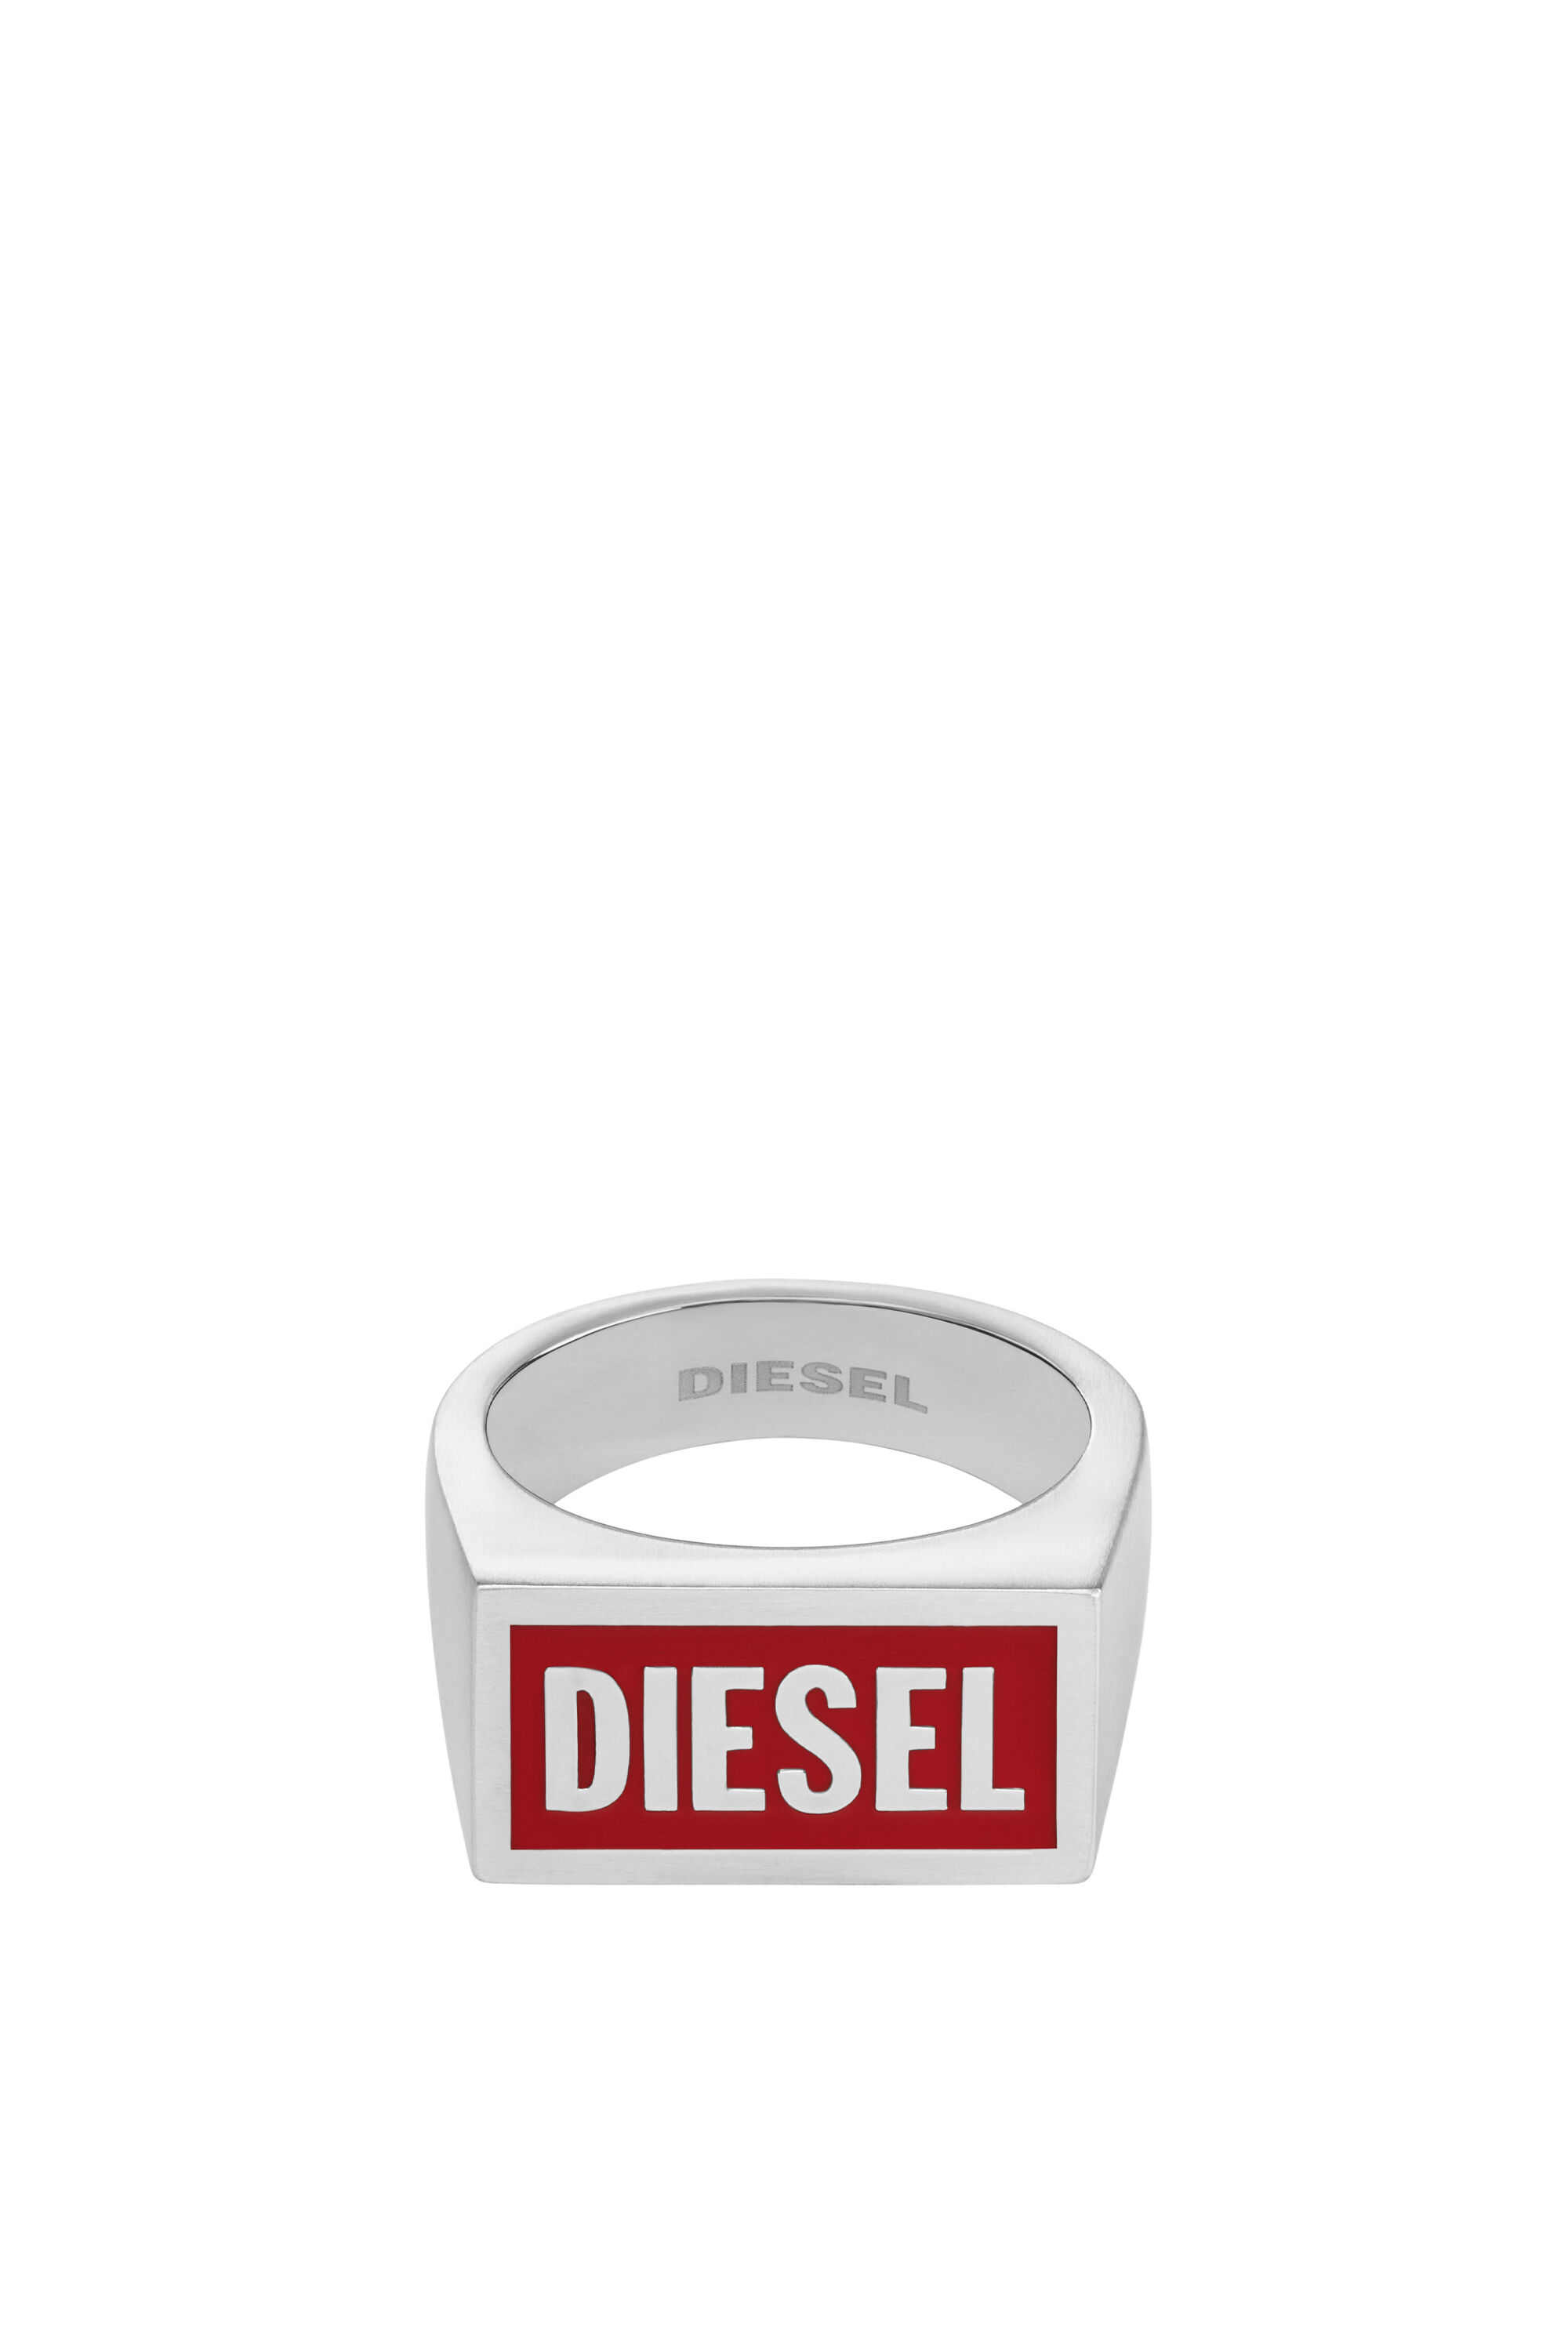 Diesel - DX1366, Silver - Image 2